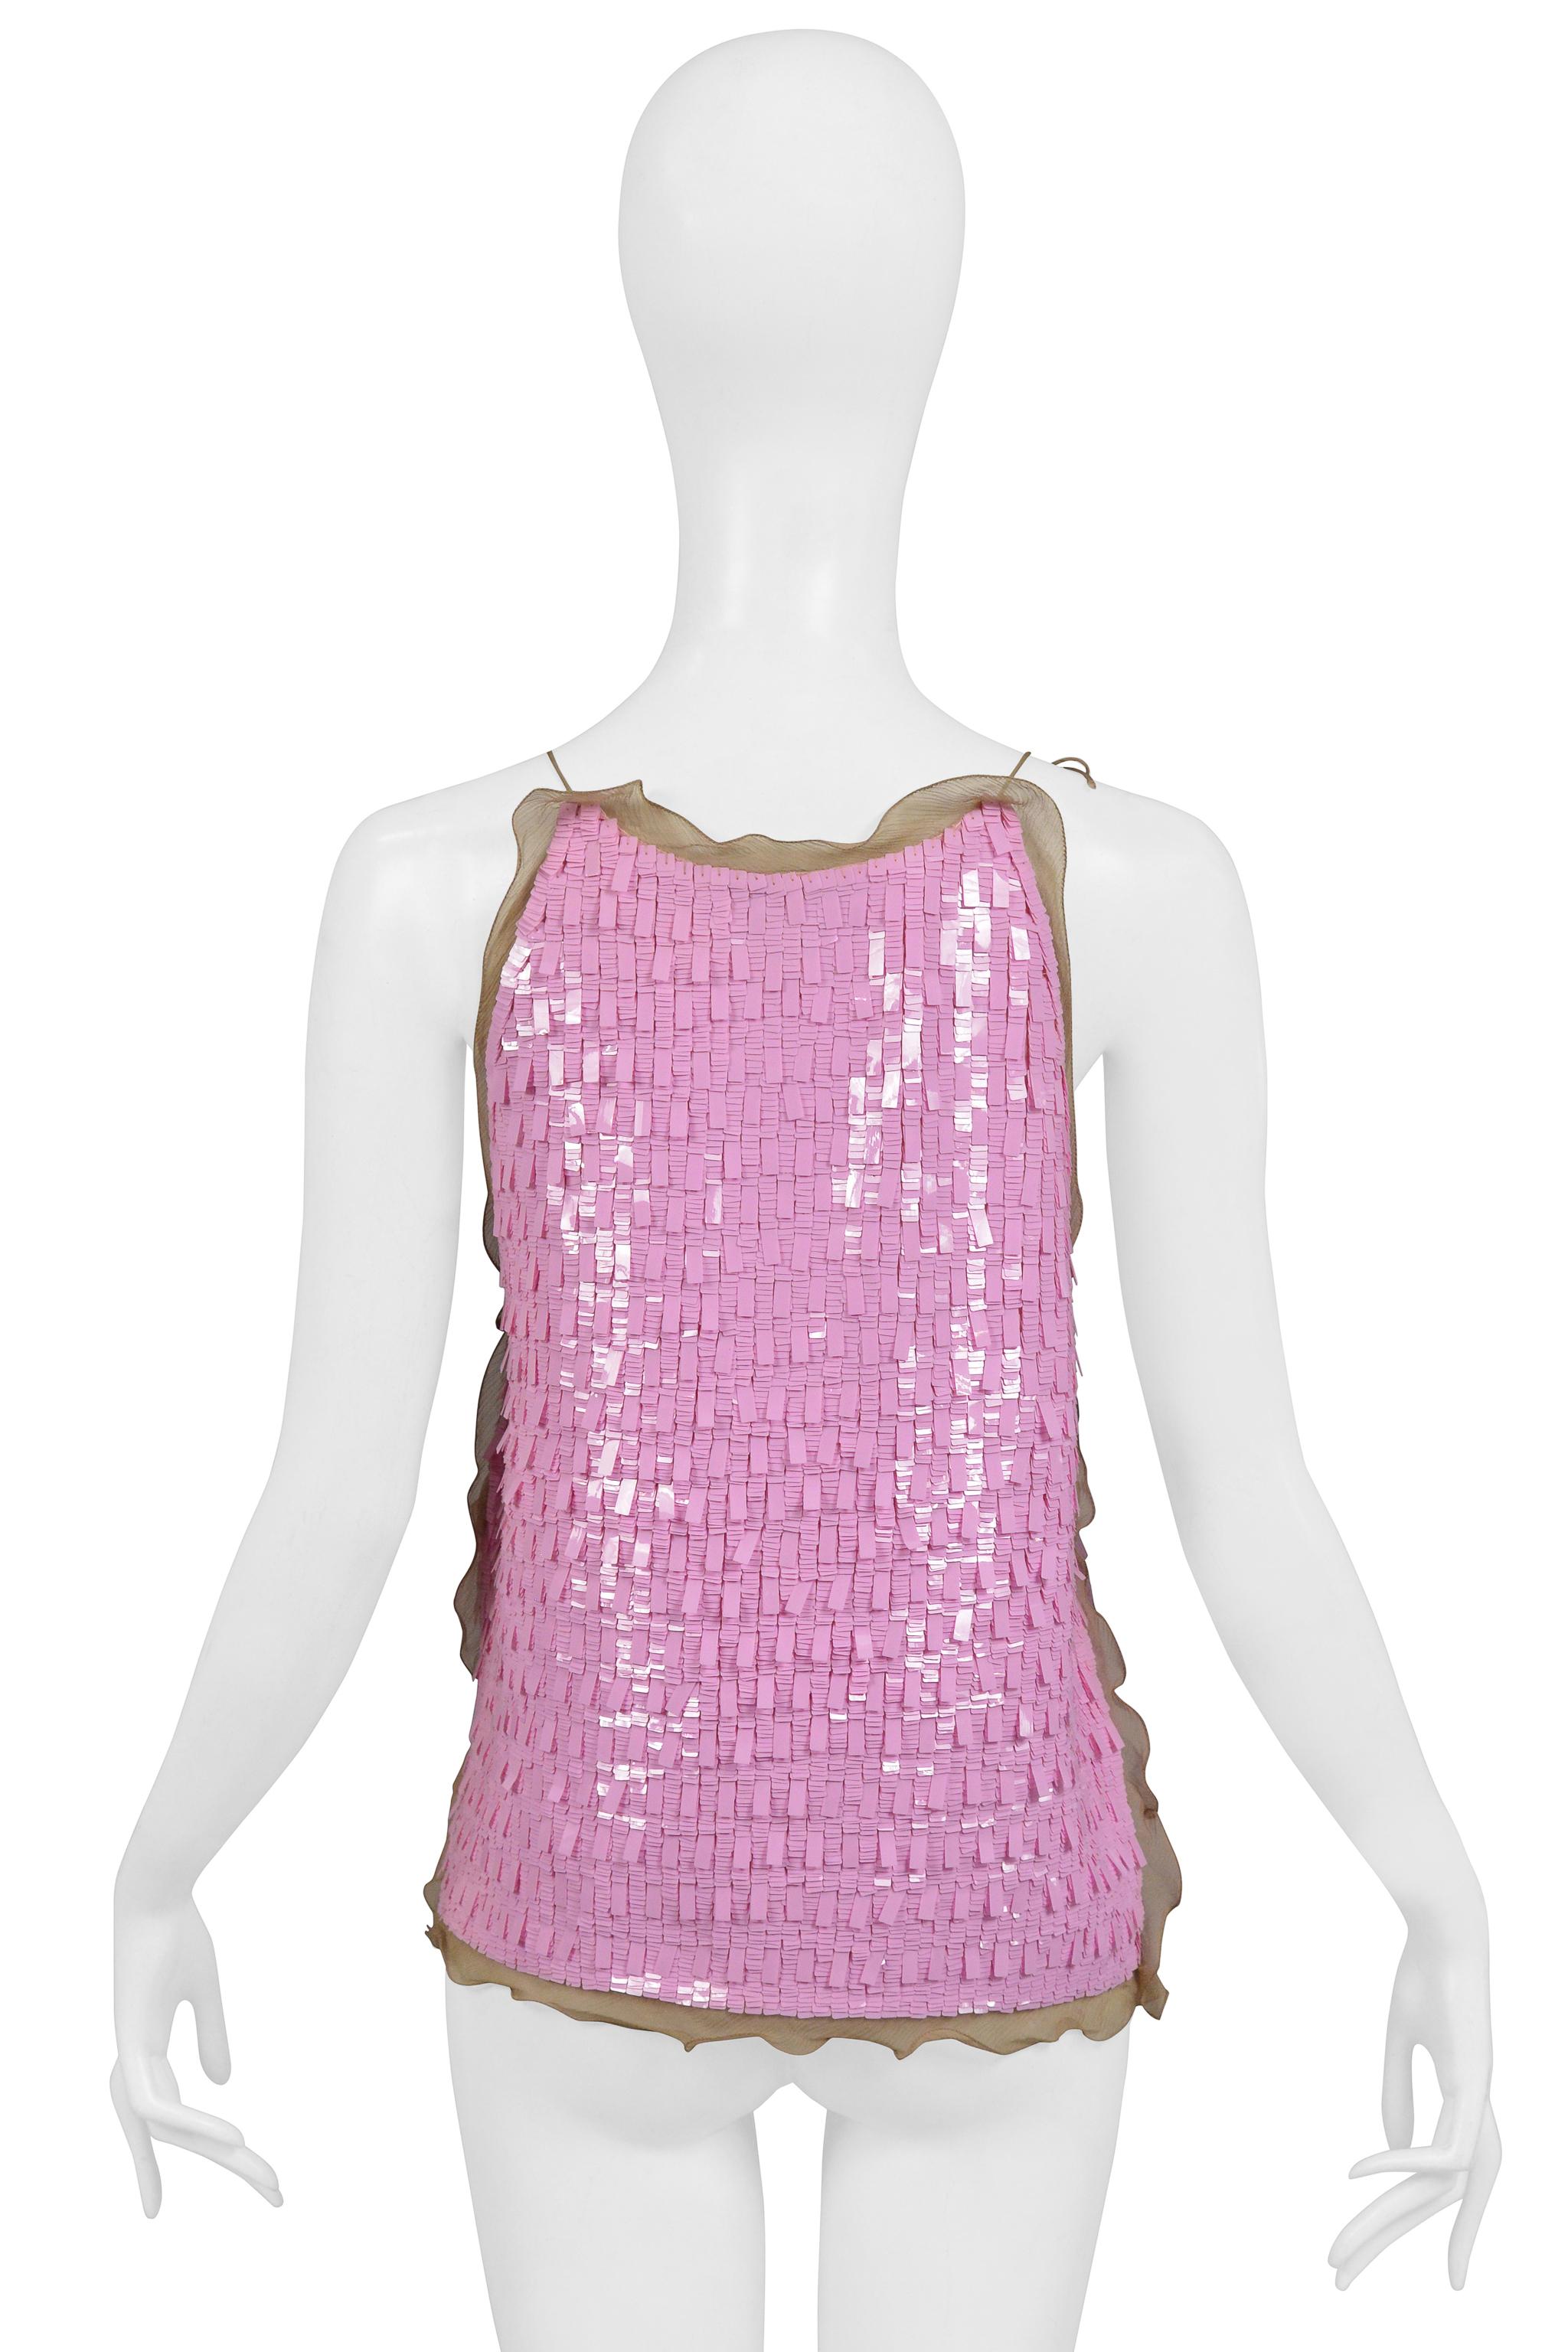 Women's Fendi By Karl Lagerfeld Pink Sequin Pailette Ruffle Top 2000 For Sale